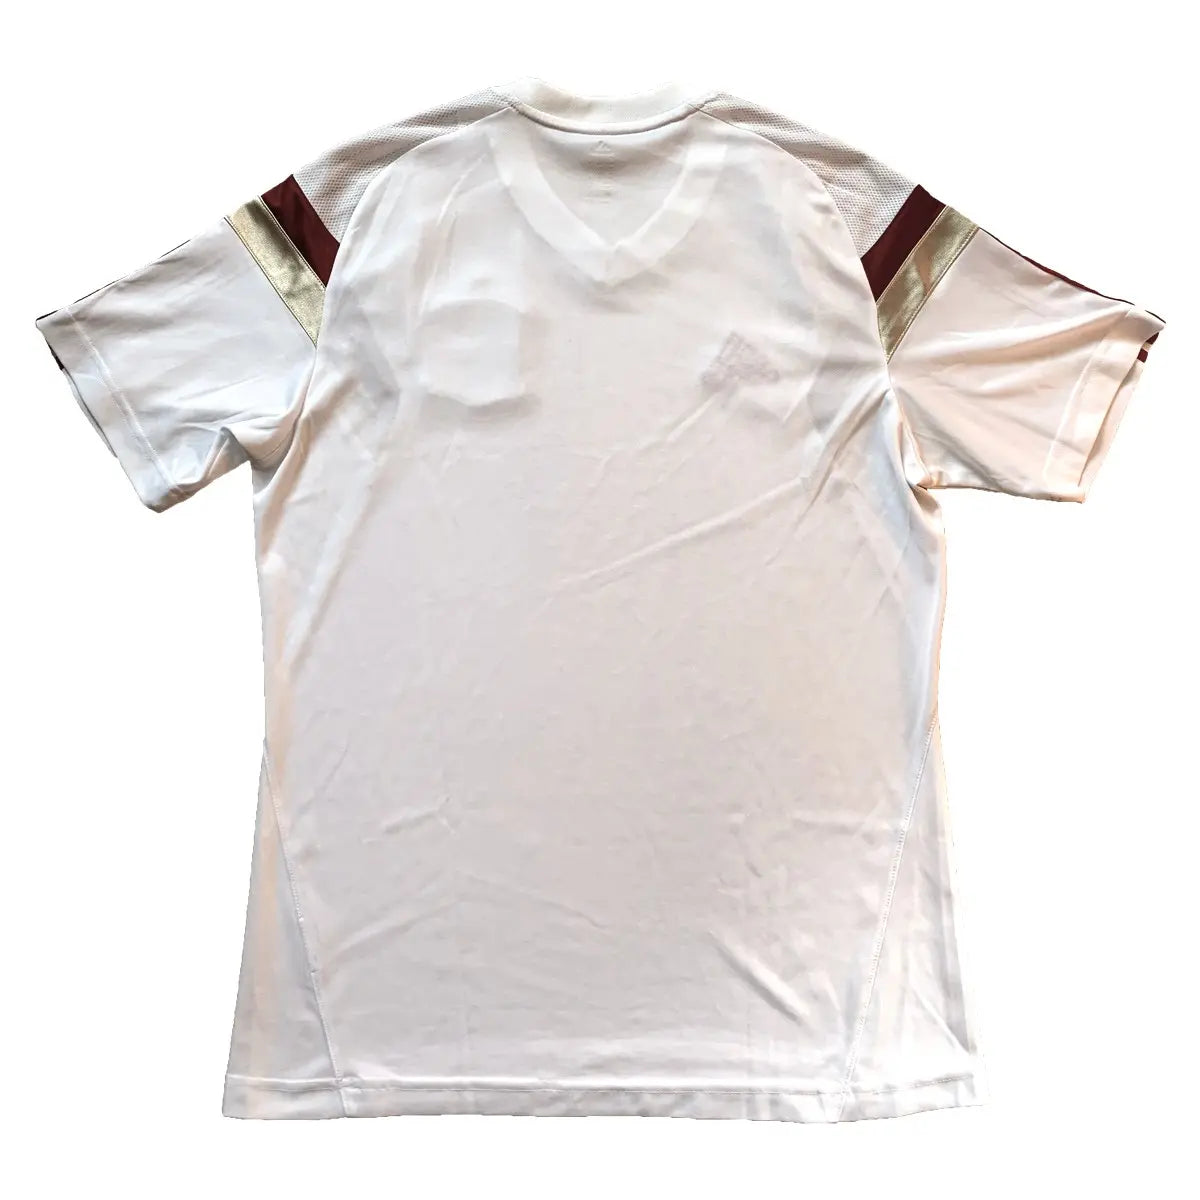 Maillot retro/vintage authentique entrainement espagne 2013-2015, blanc avec du rouge, du dorée et l'équipementier adidas de dos